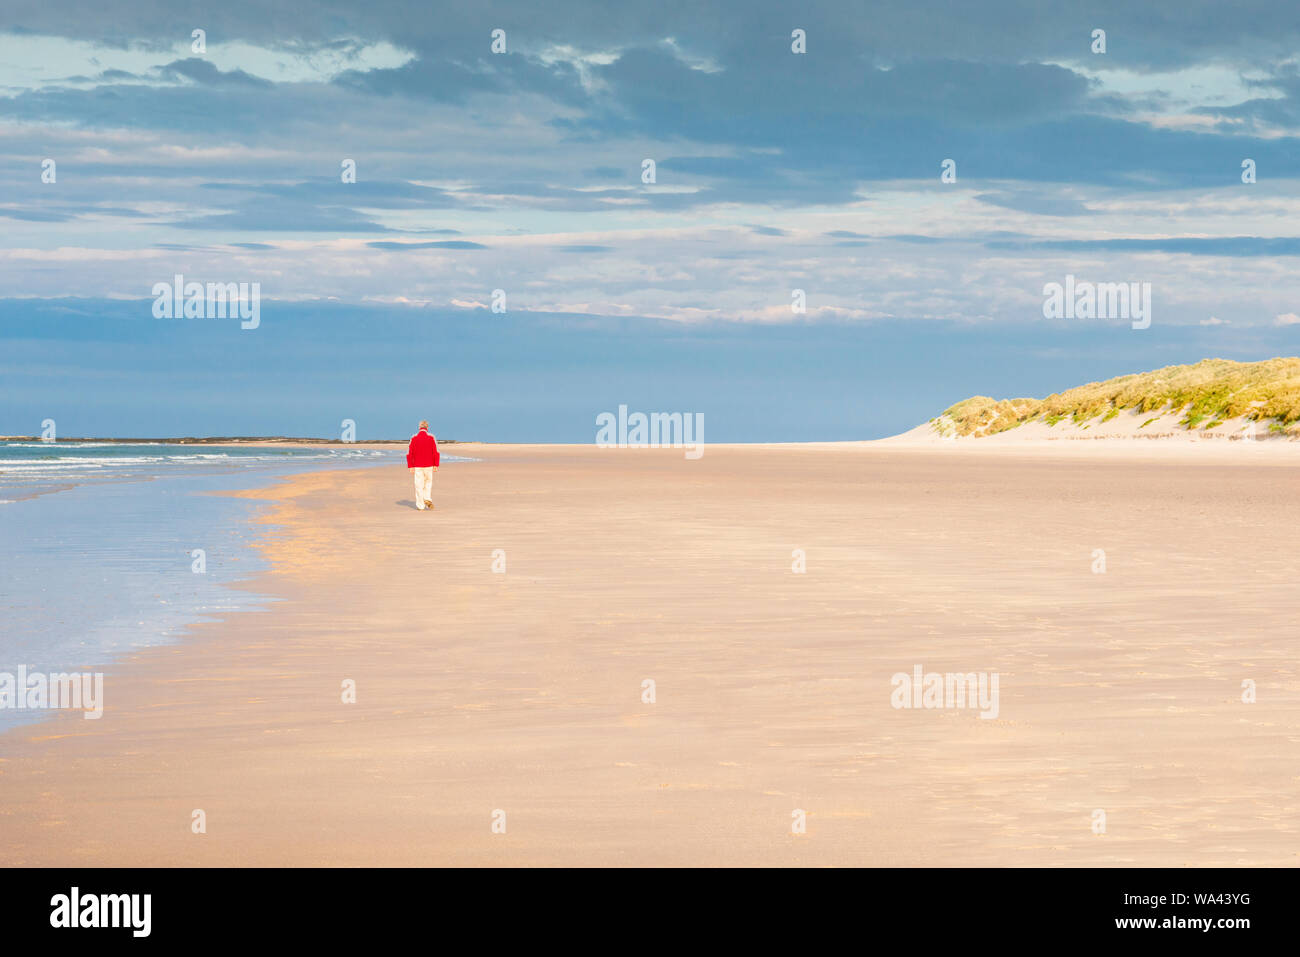 Large plage de sable propre expansive sur la côte de Northumberland près de Lunteren. Un homme solitaire avec un haut rouge marche seul sur le sable de la mer. Banque D'Images